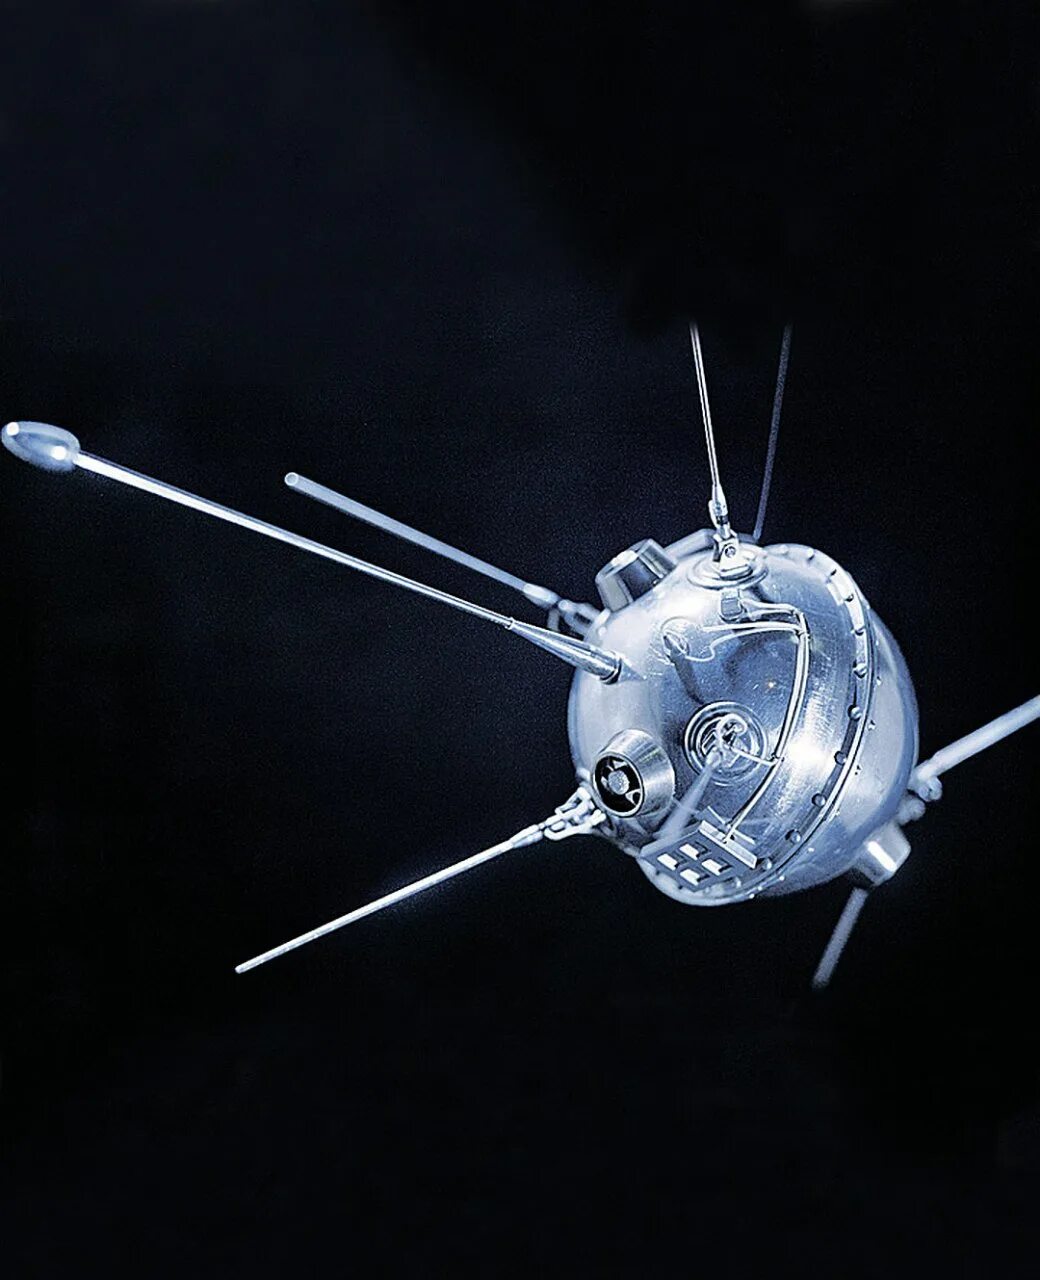 Первые космические спутники ссср. Луна-2 автоматическая межпланетная станция. Луна-1 автоматическая межпланетная станция. Луна-11 автоматическая межпланетная станция. Первый космический Спутник.